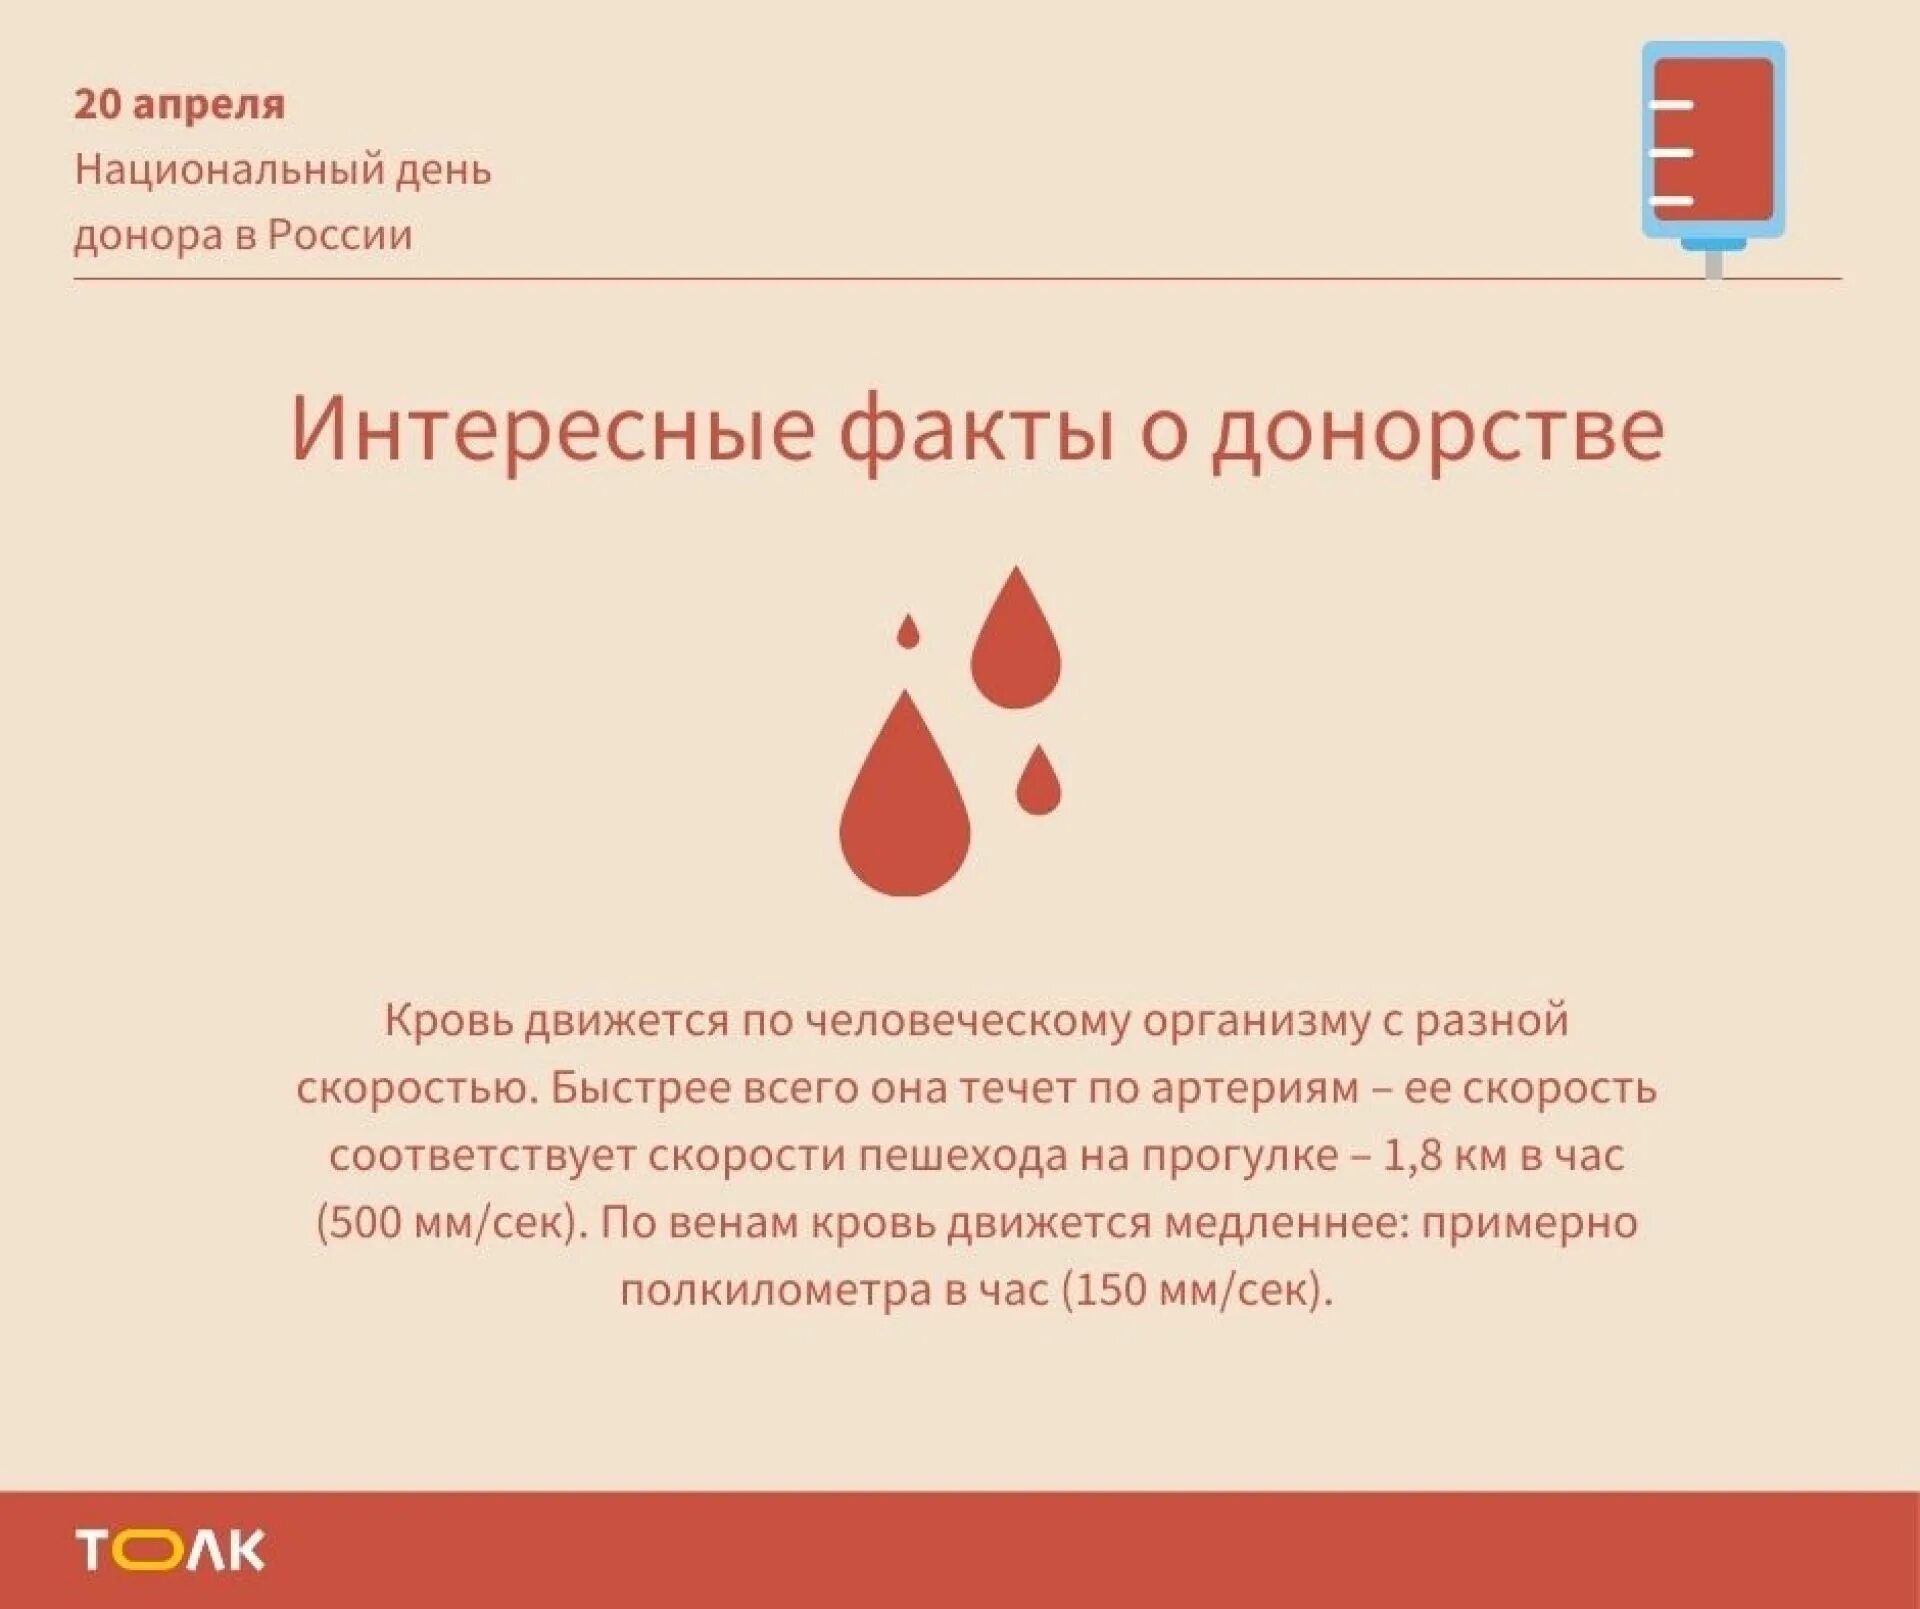 День донора в России. Национальный день донора крови в России. 20 Апреля национальный день донора. День донора в России в 2021.